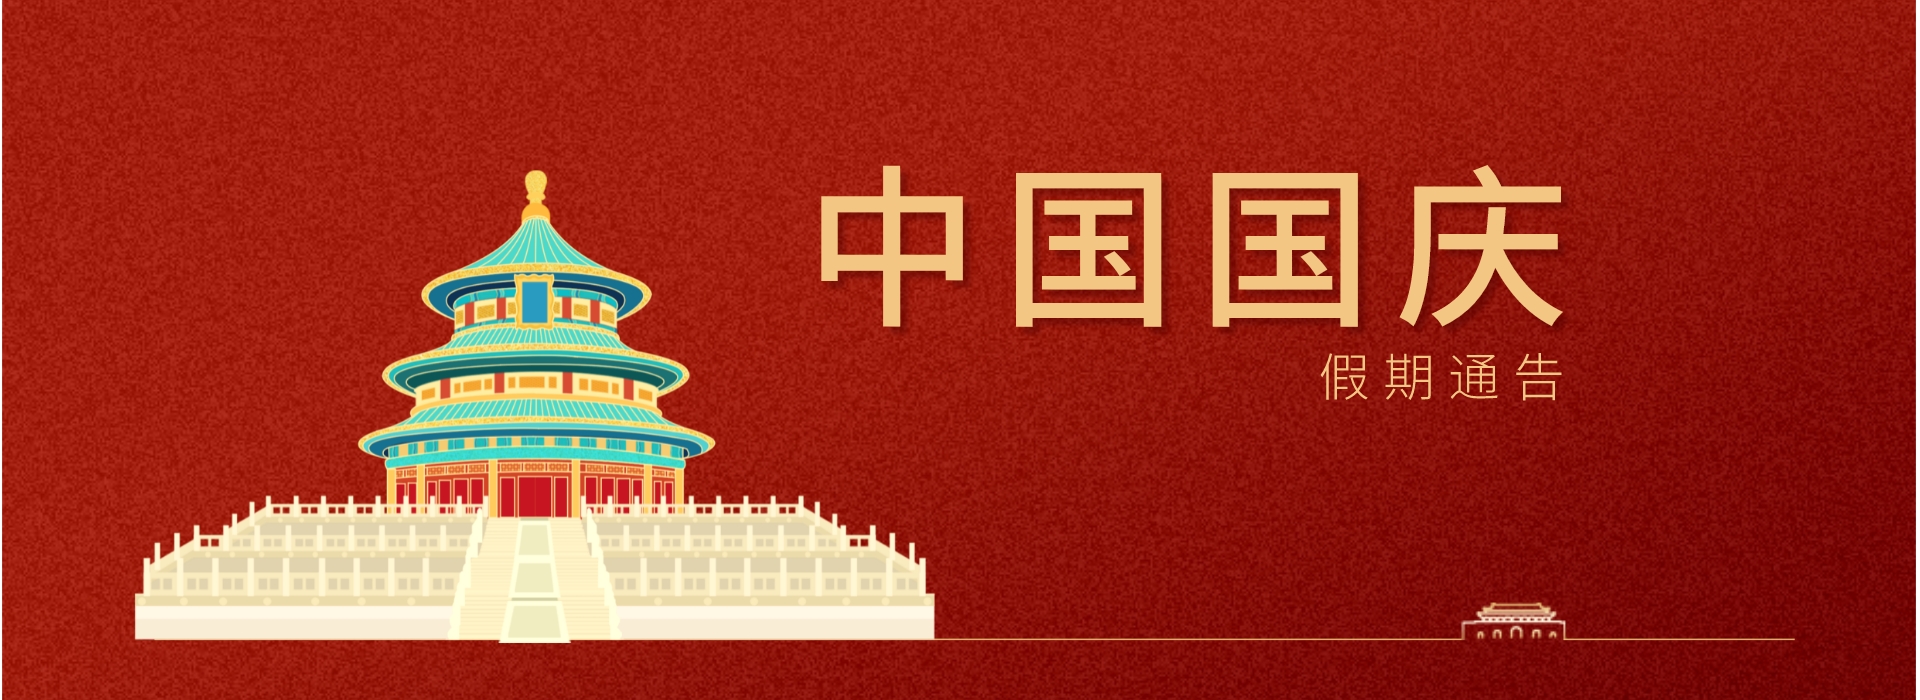 2022年10月1日中国国庆假期通告 | MYBEST中国到马来西亚空运海运 | MYBEST拼多多集运代运